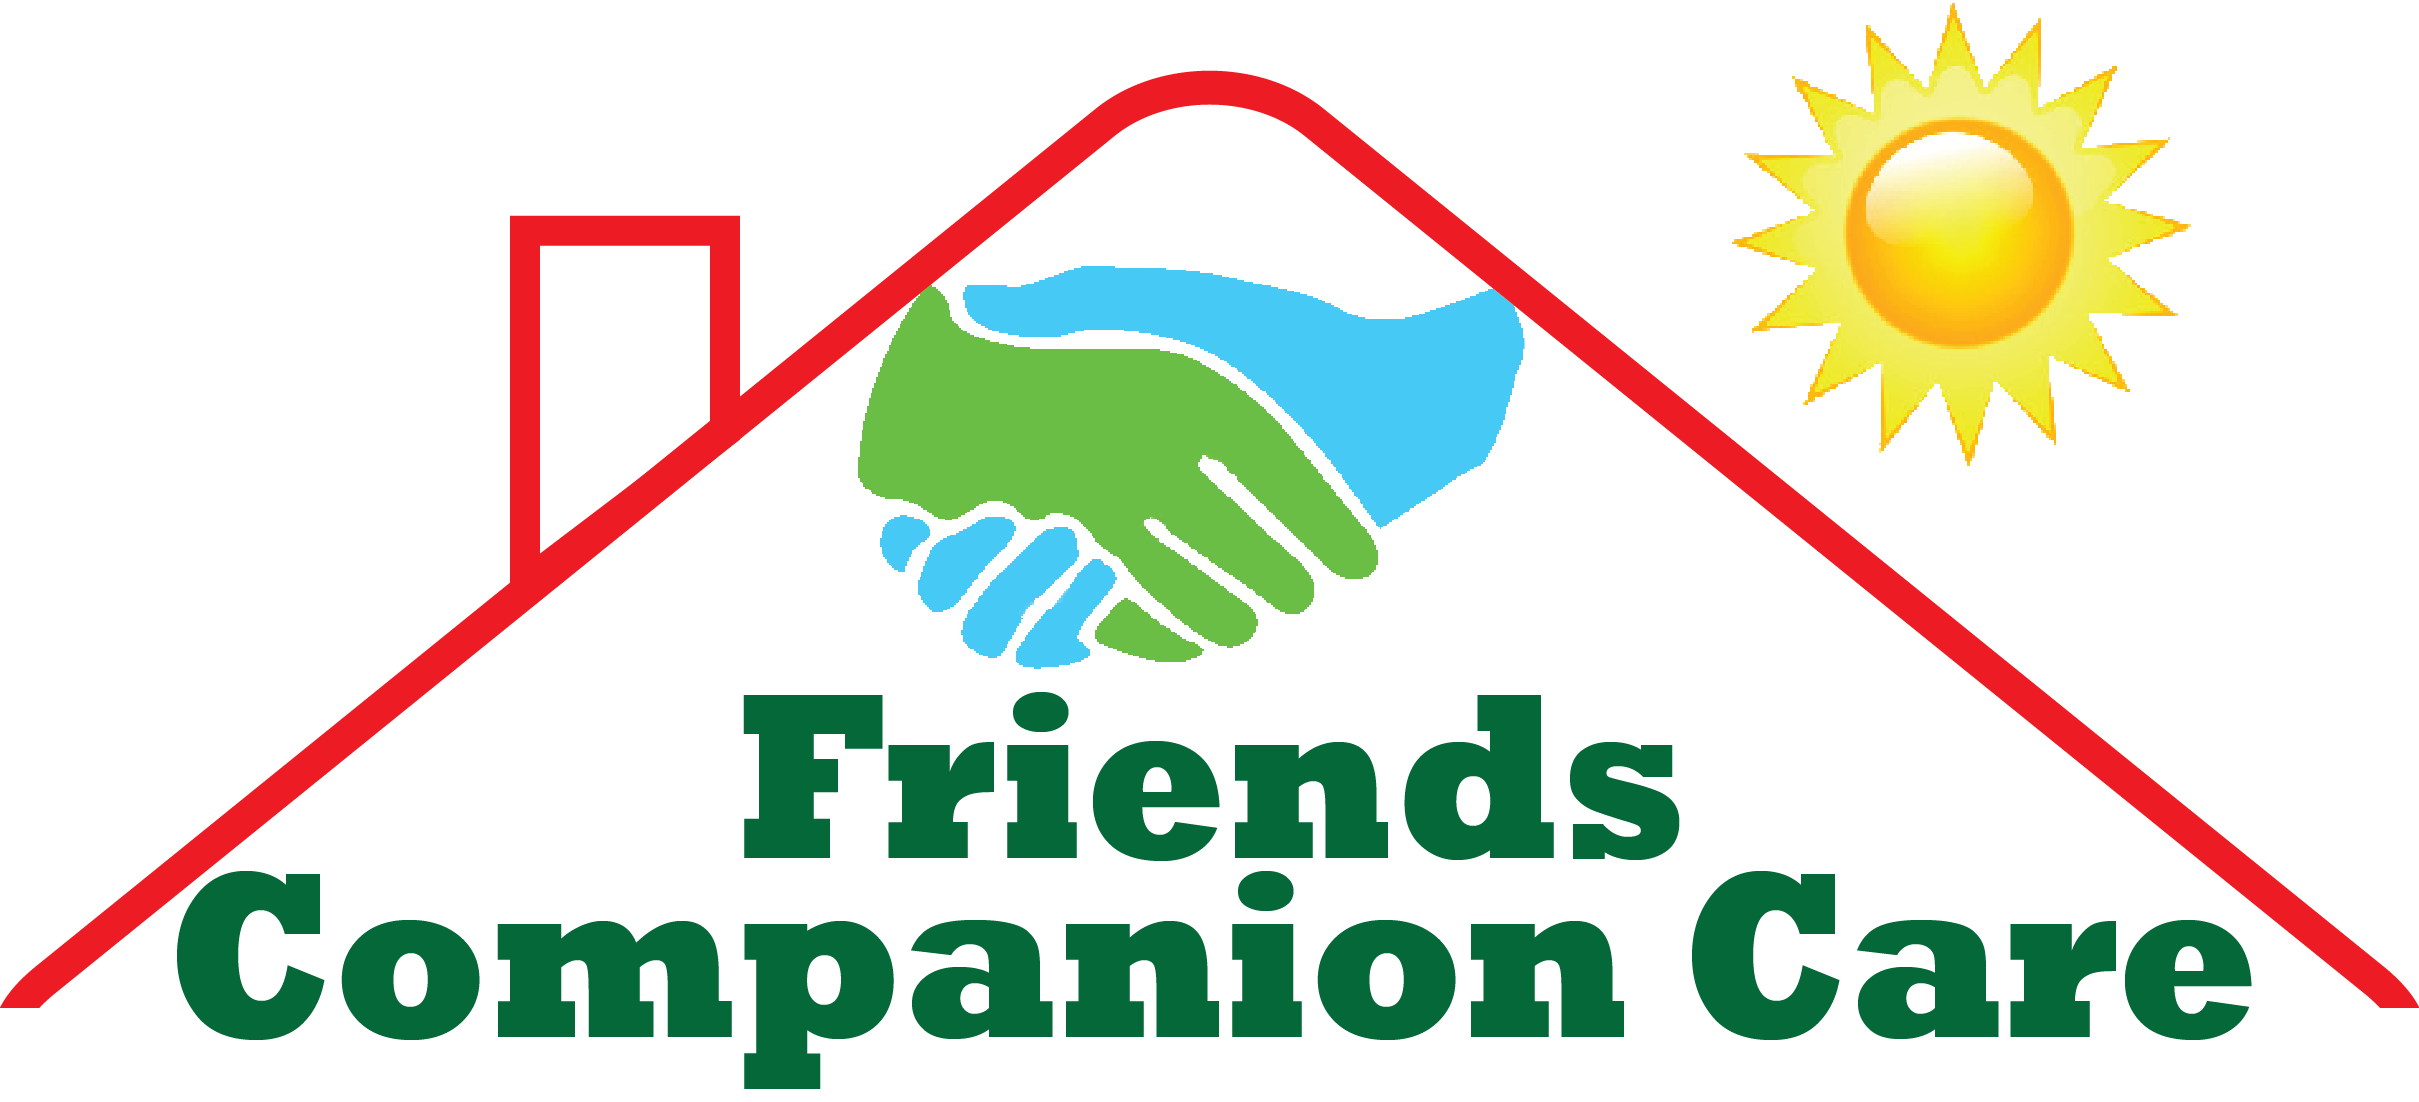 Friends Companion Care